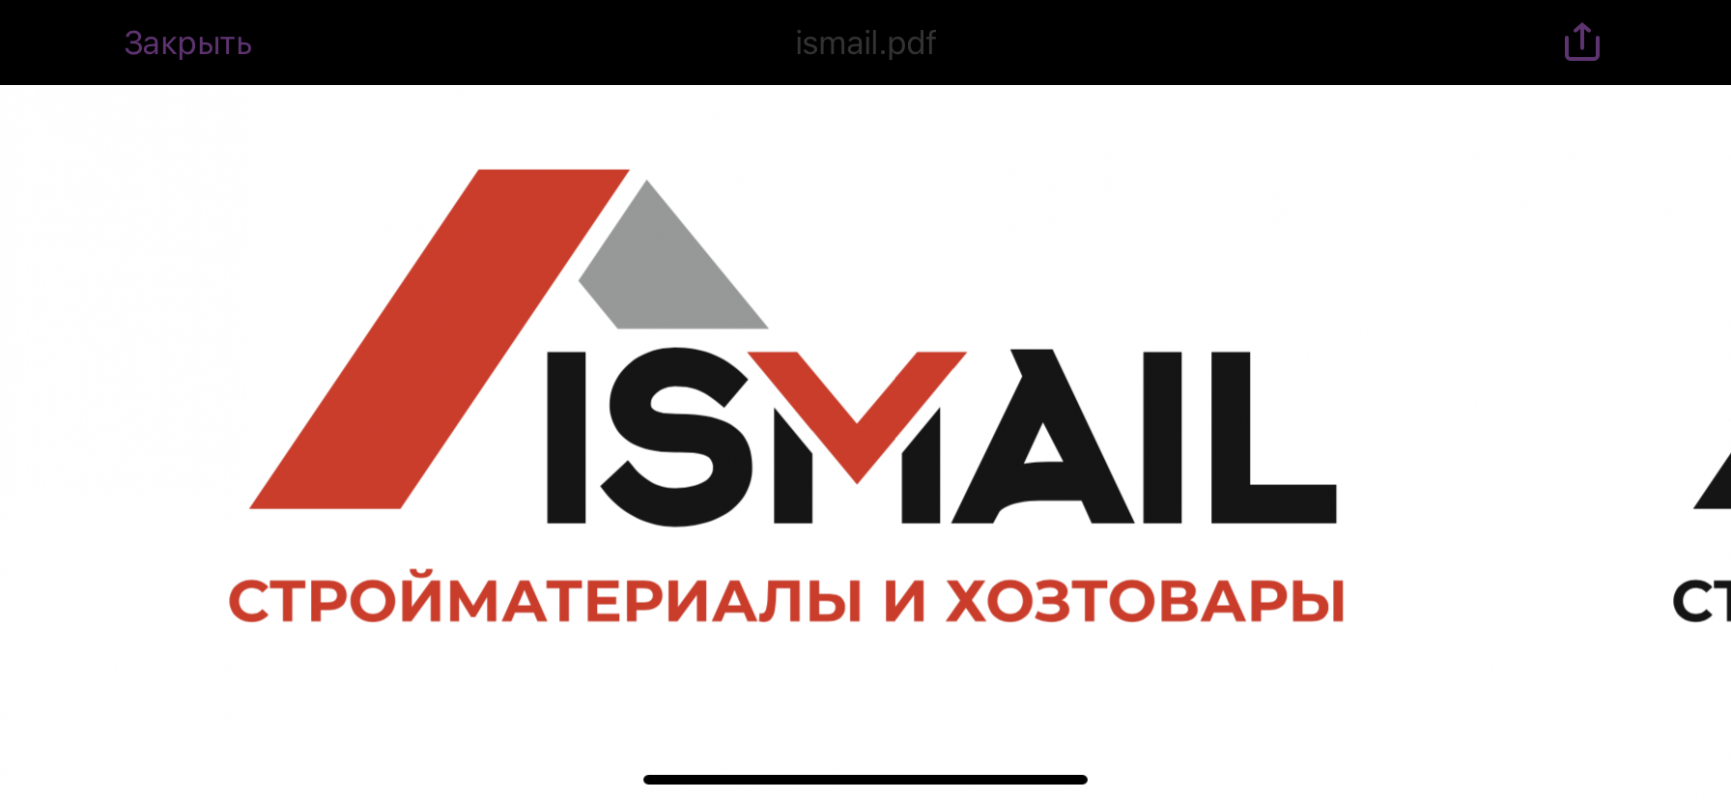 Строительный магазин Исмаил: отзывы от сотрудников и партнеров